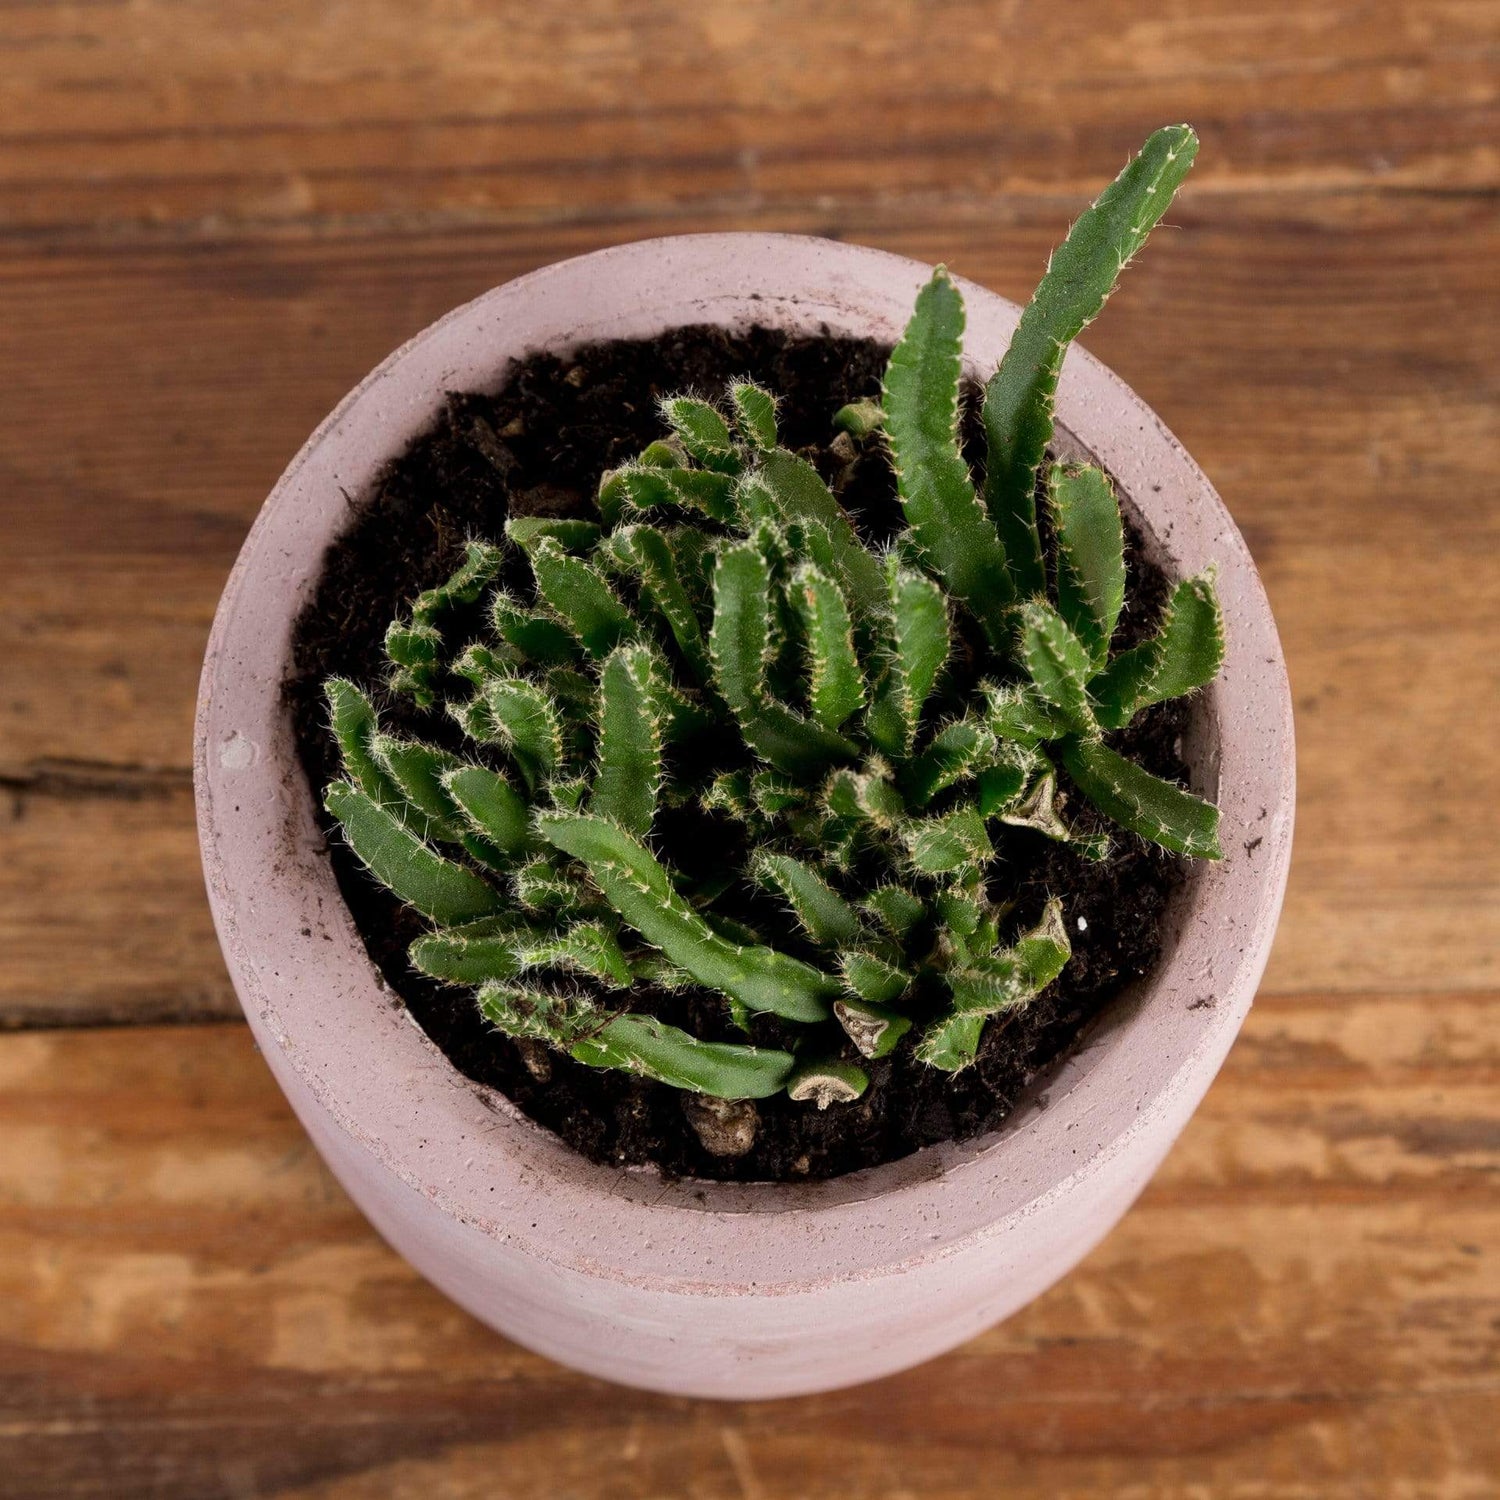 Cactus 'Pfeiffera Monacantha - Mini' - Urban Sprouts